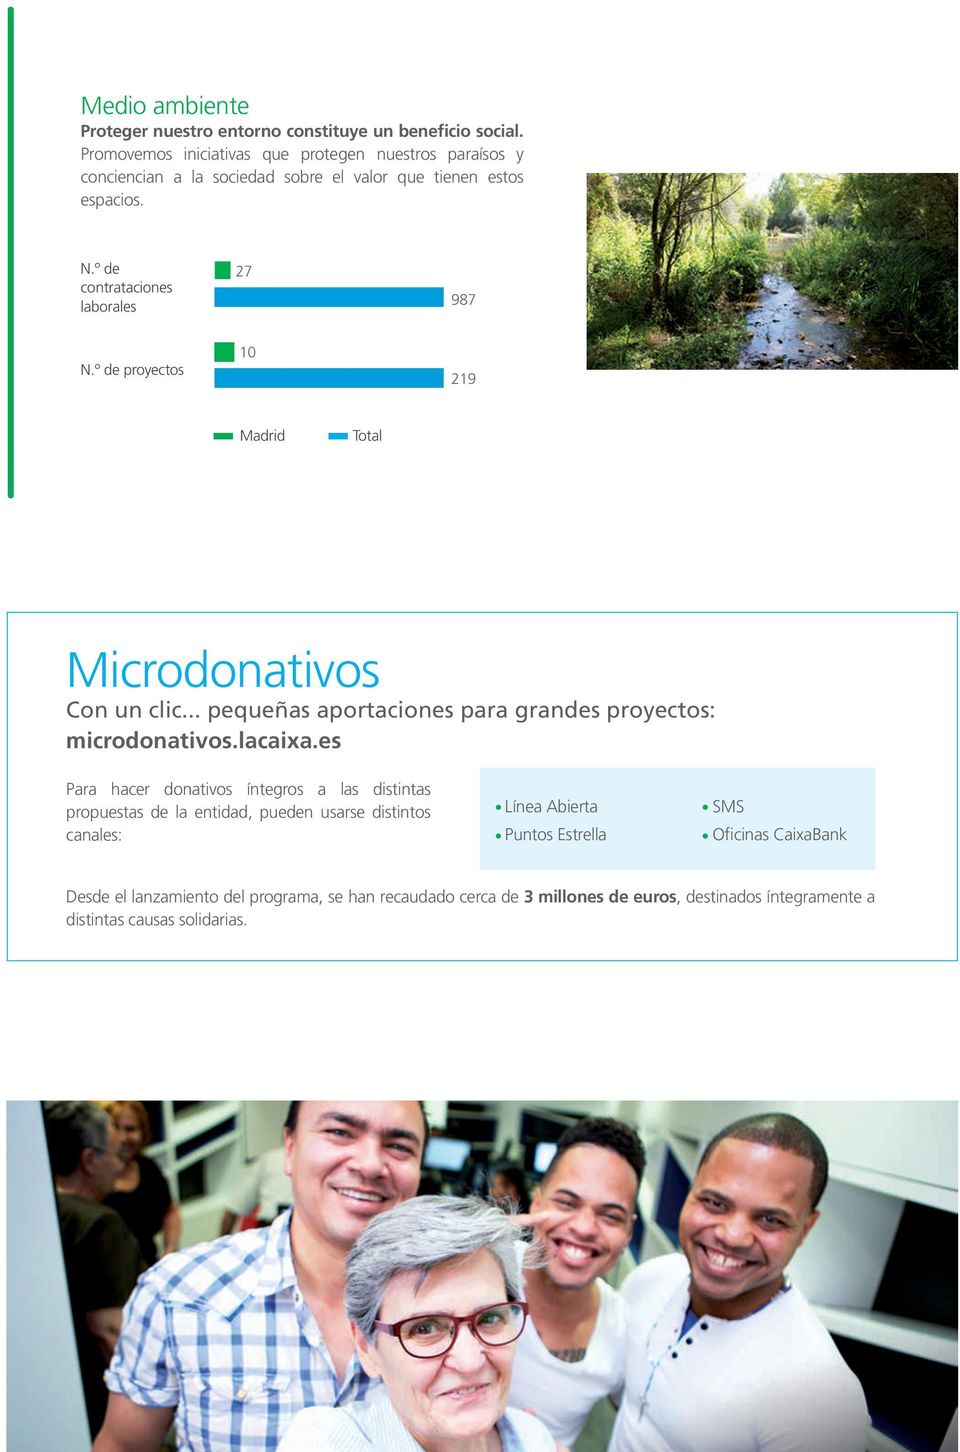 º de contrataciones laborales 27 987 N.º de proyectos 10 219 Microdonativos Con un clic... pequeñas aportaciones para grandes proyectos: microdonativos.lacaixa.